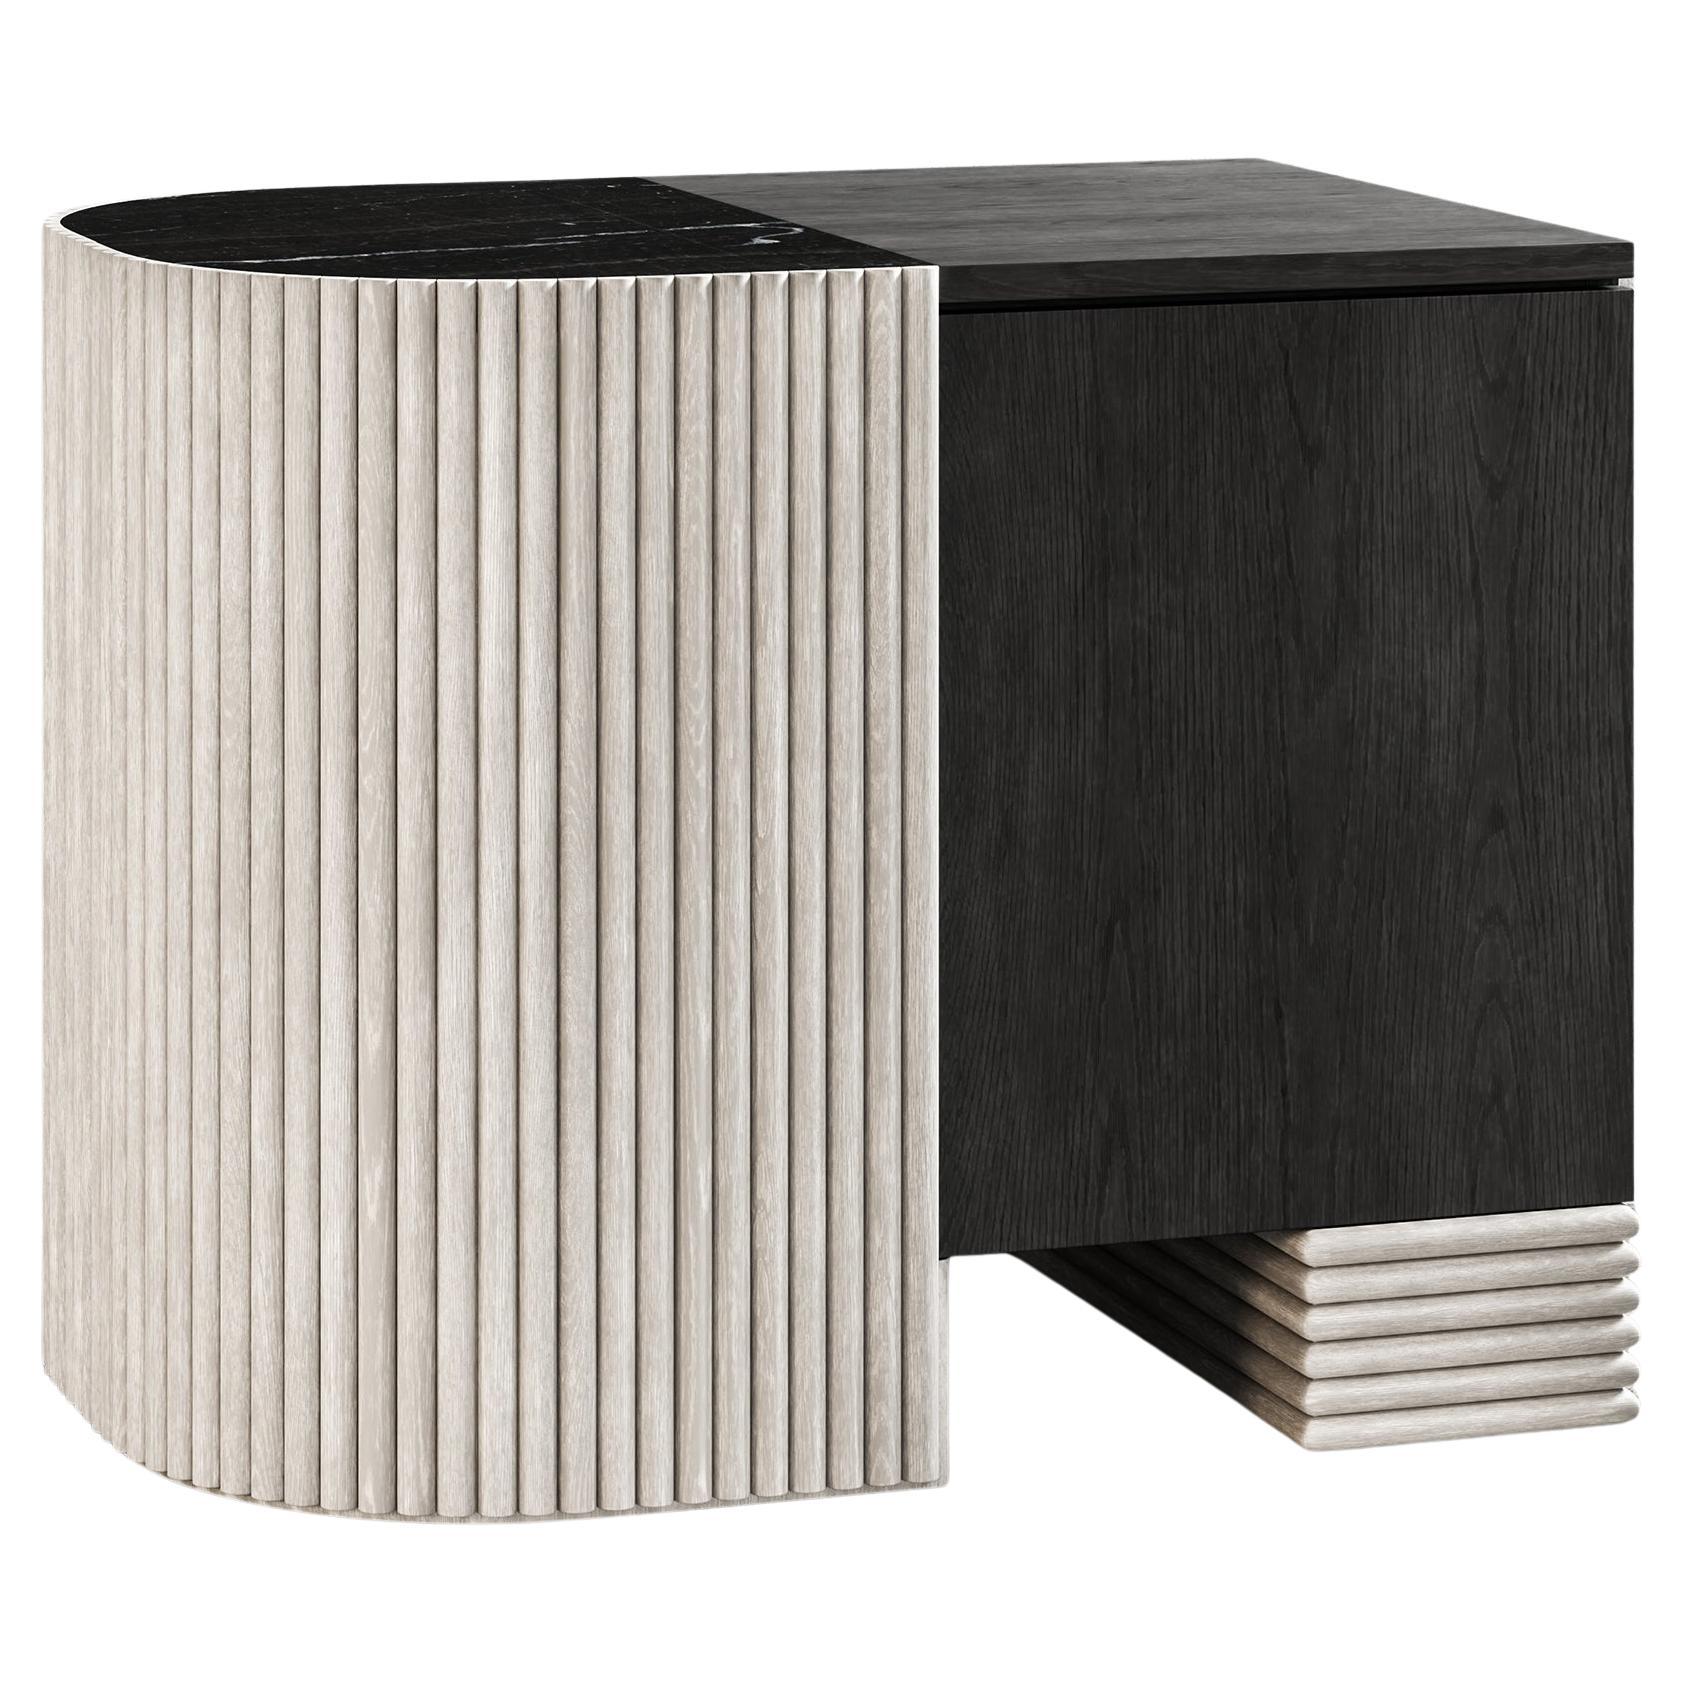 TABLE DE NUIT SWAY - Design Modern avec chêne sable et ébène + marbre Nero Marquina